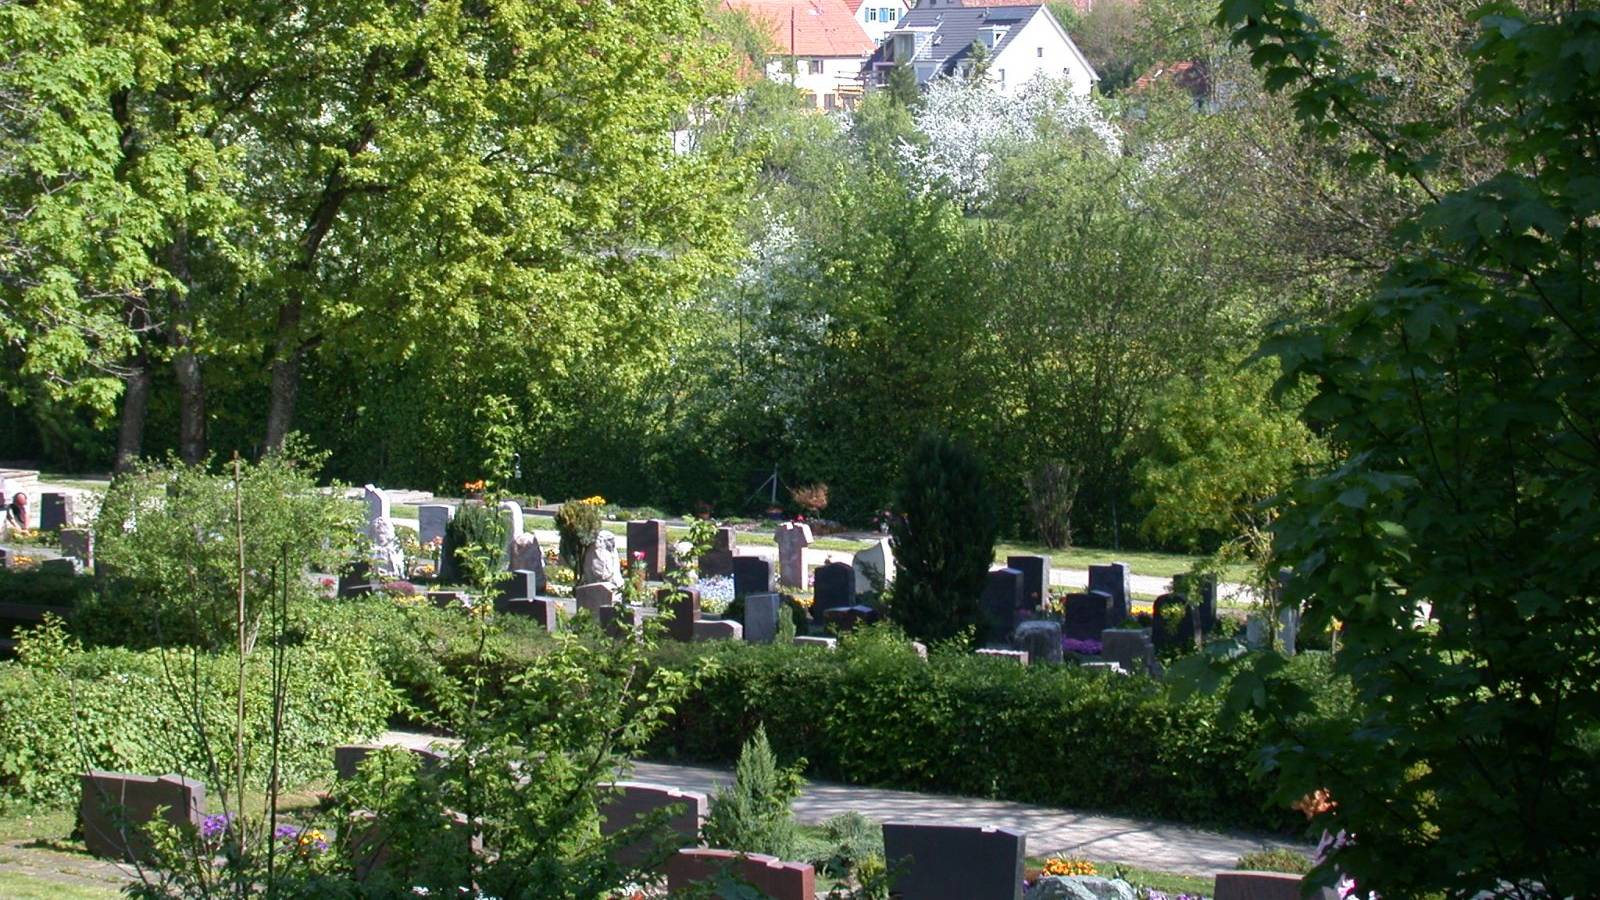  Friedhof Deufringen 